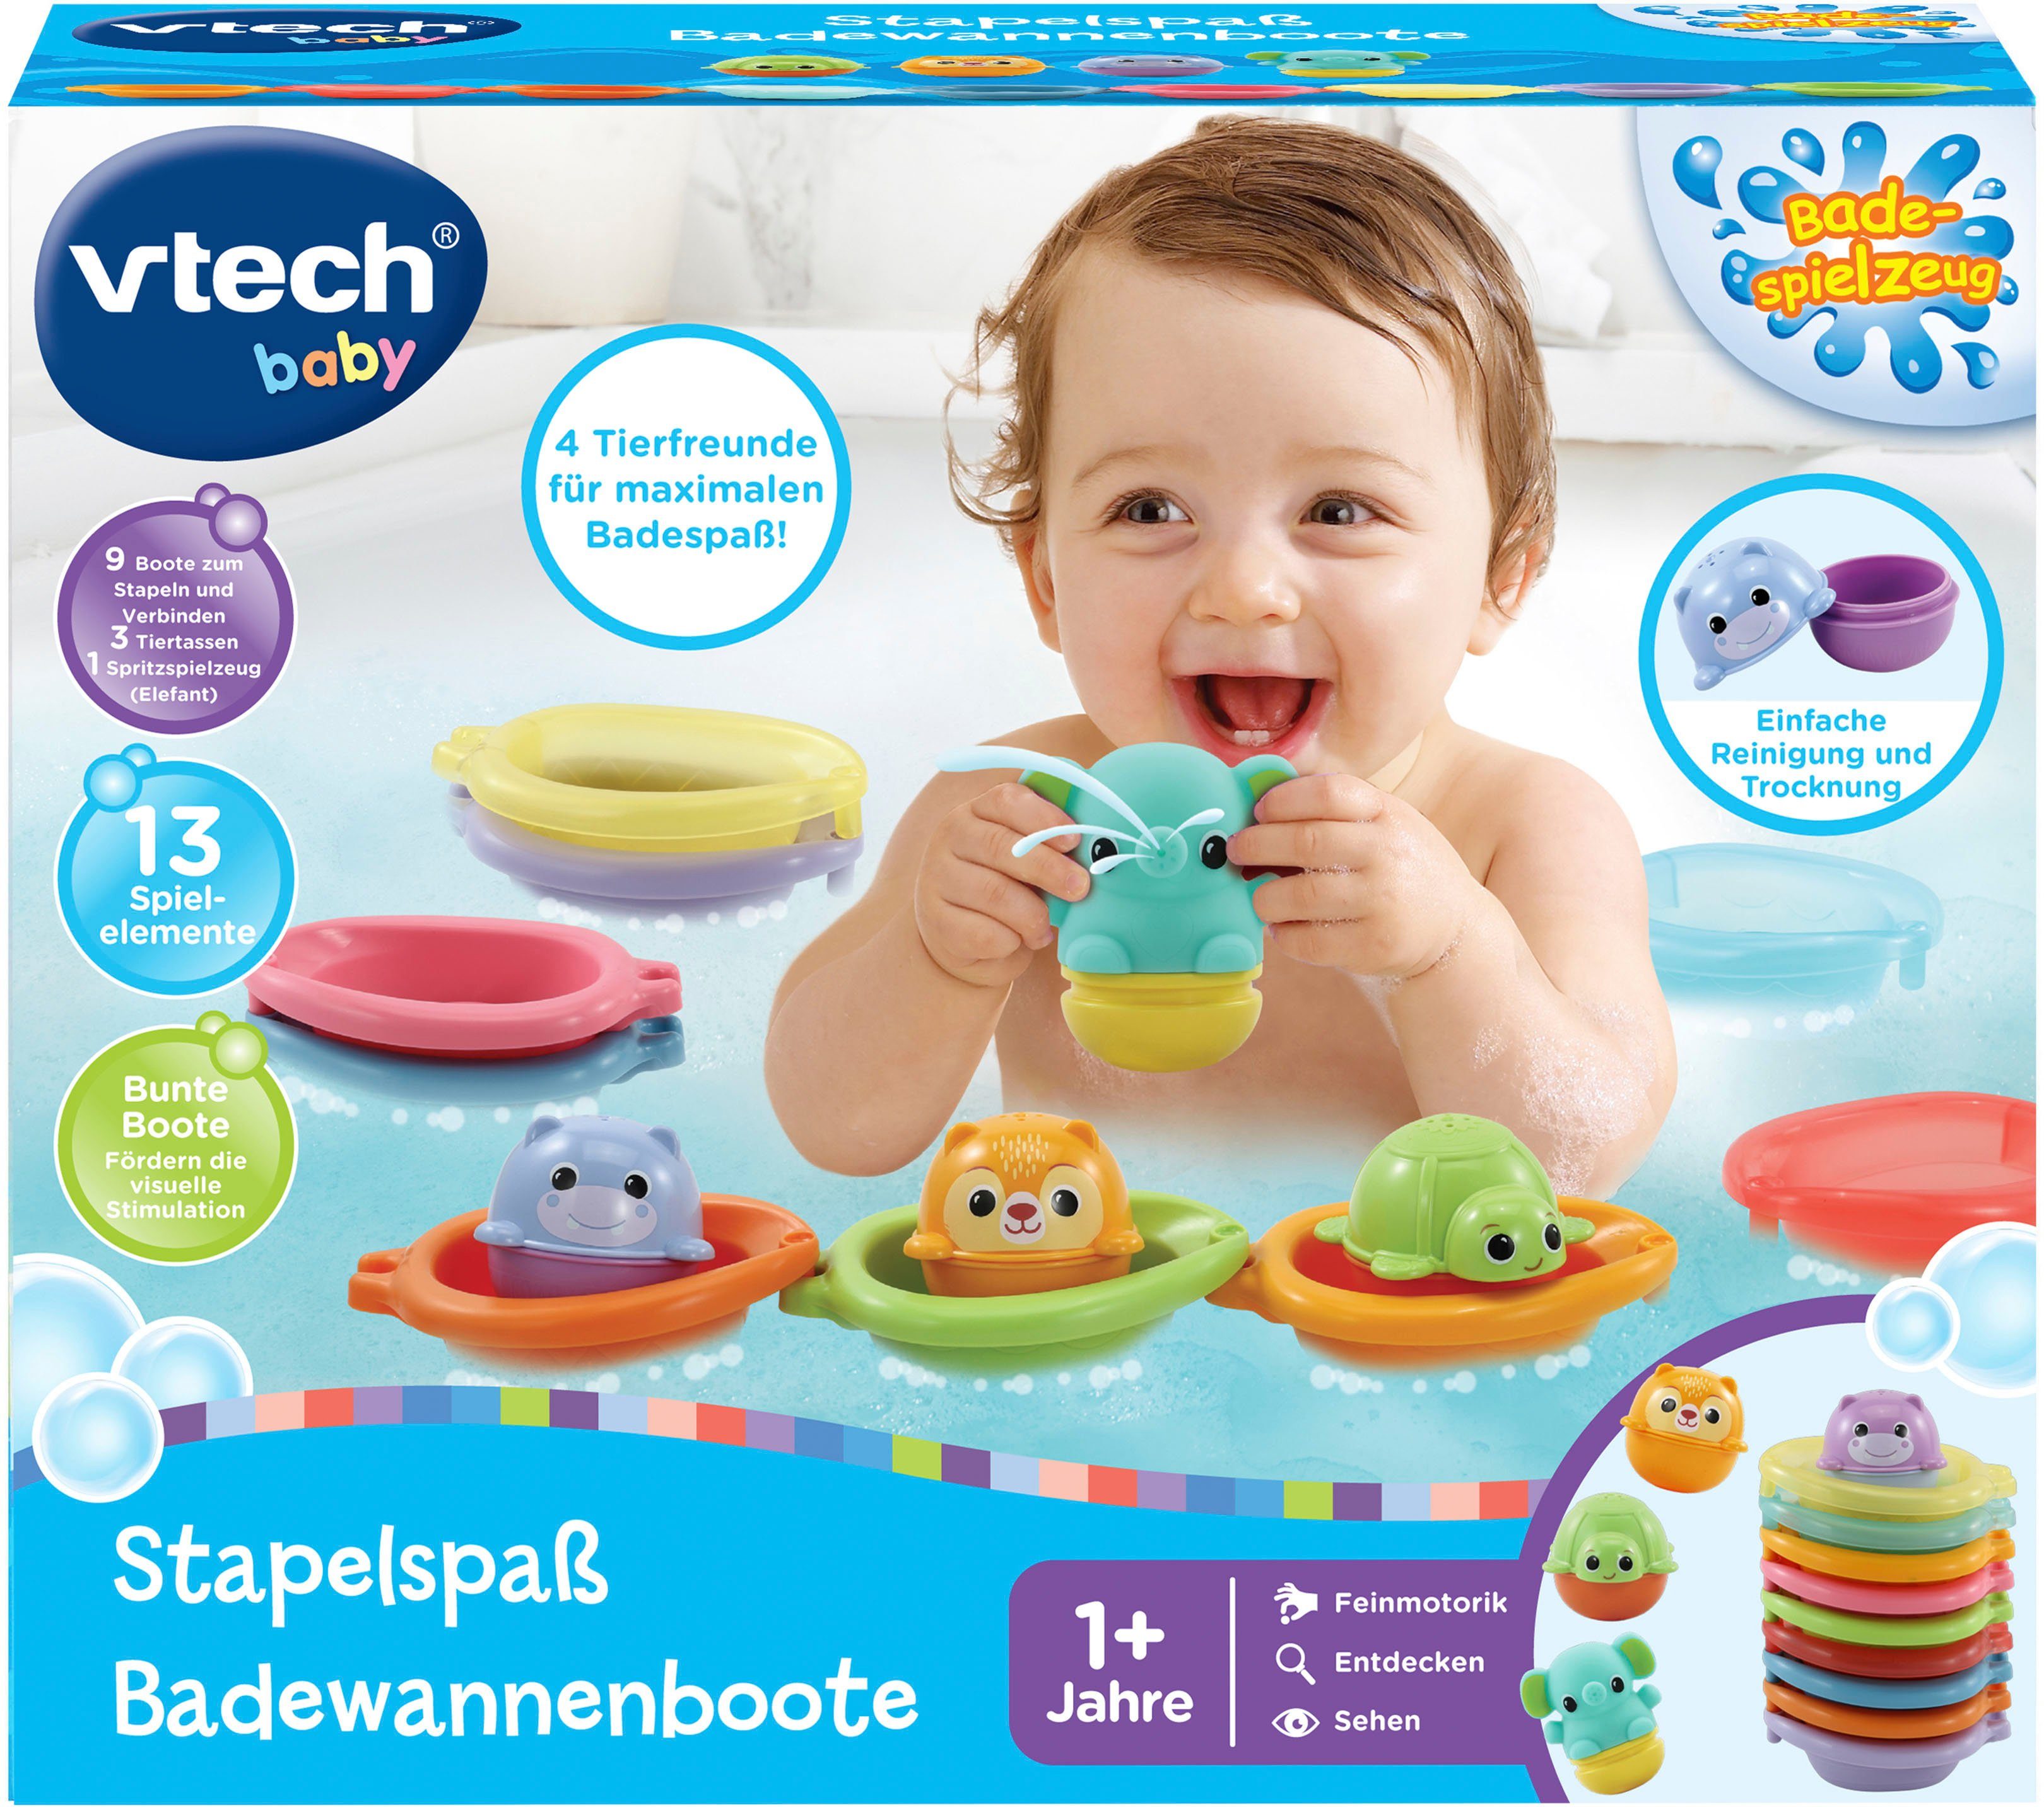 Vtech® Badespielzeug Vtech Baby, Badewannenboote Stapelspaß